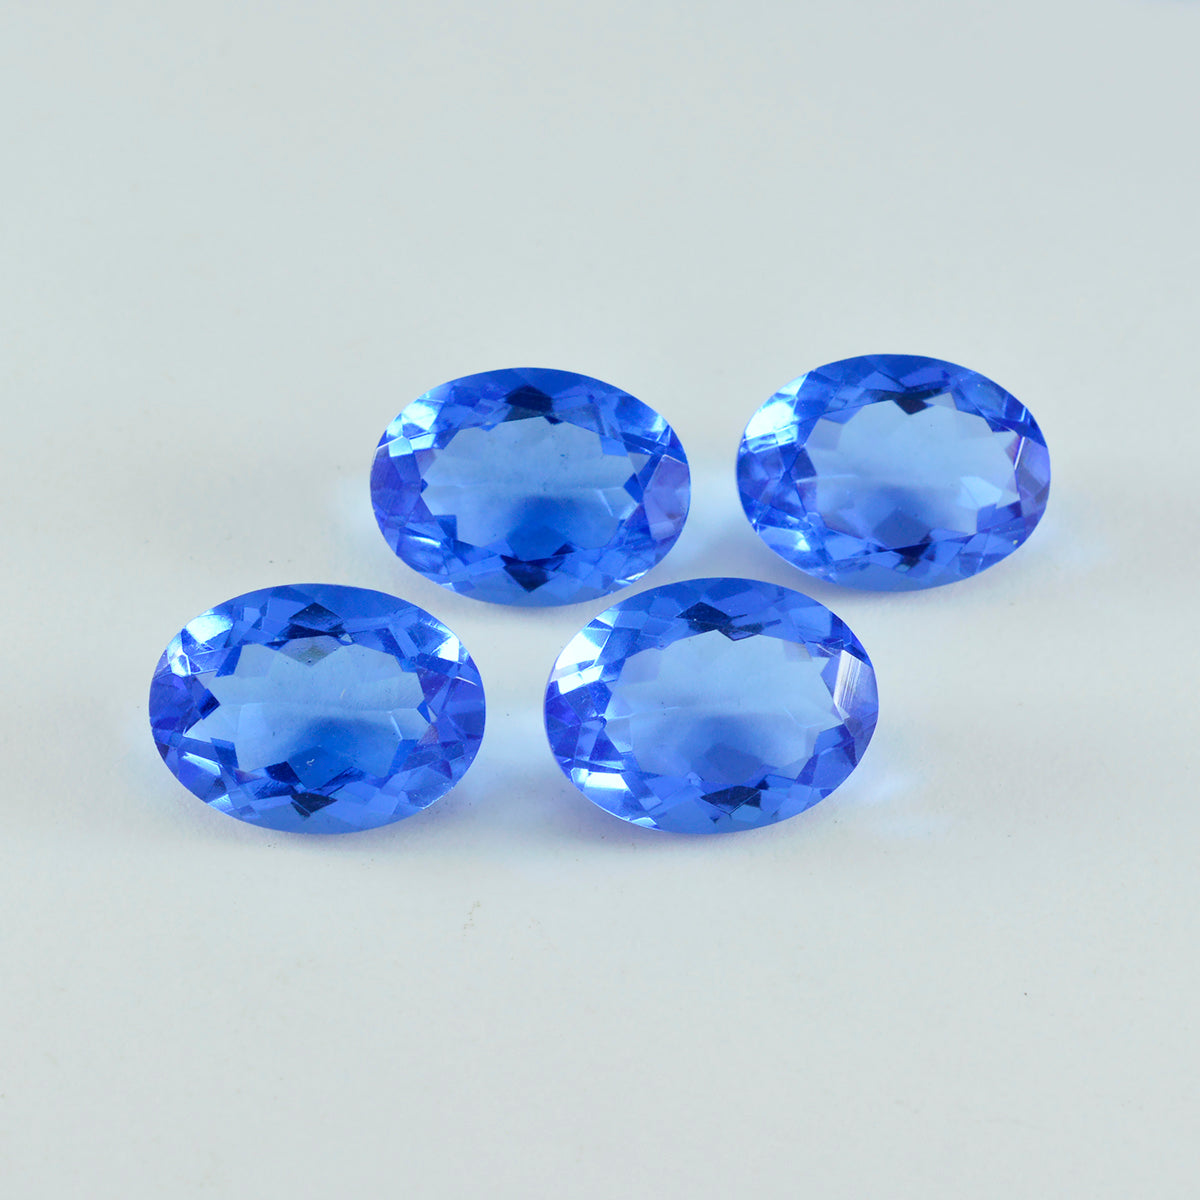 Riyogems 1 Stück blauer Saphir, CZ, facettiert, 10 x 14 mm, ovale Form, attraktive, hochwertige lose Edelsteine